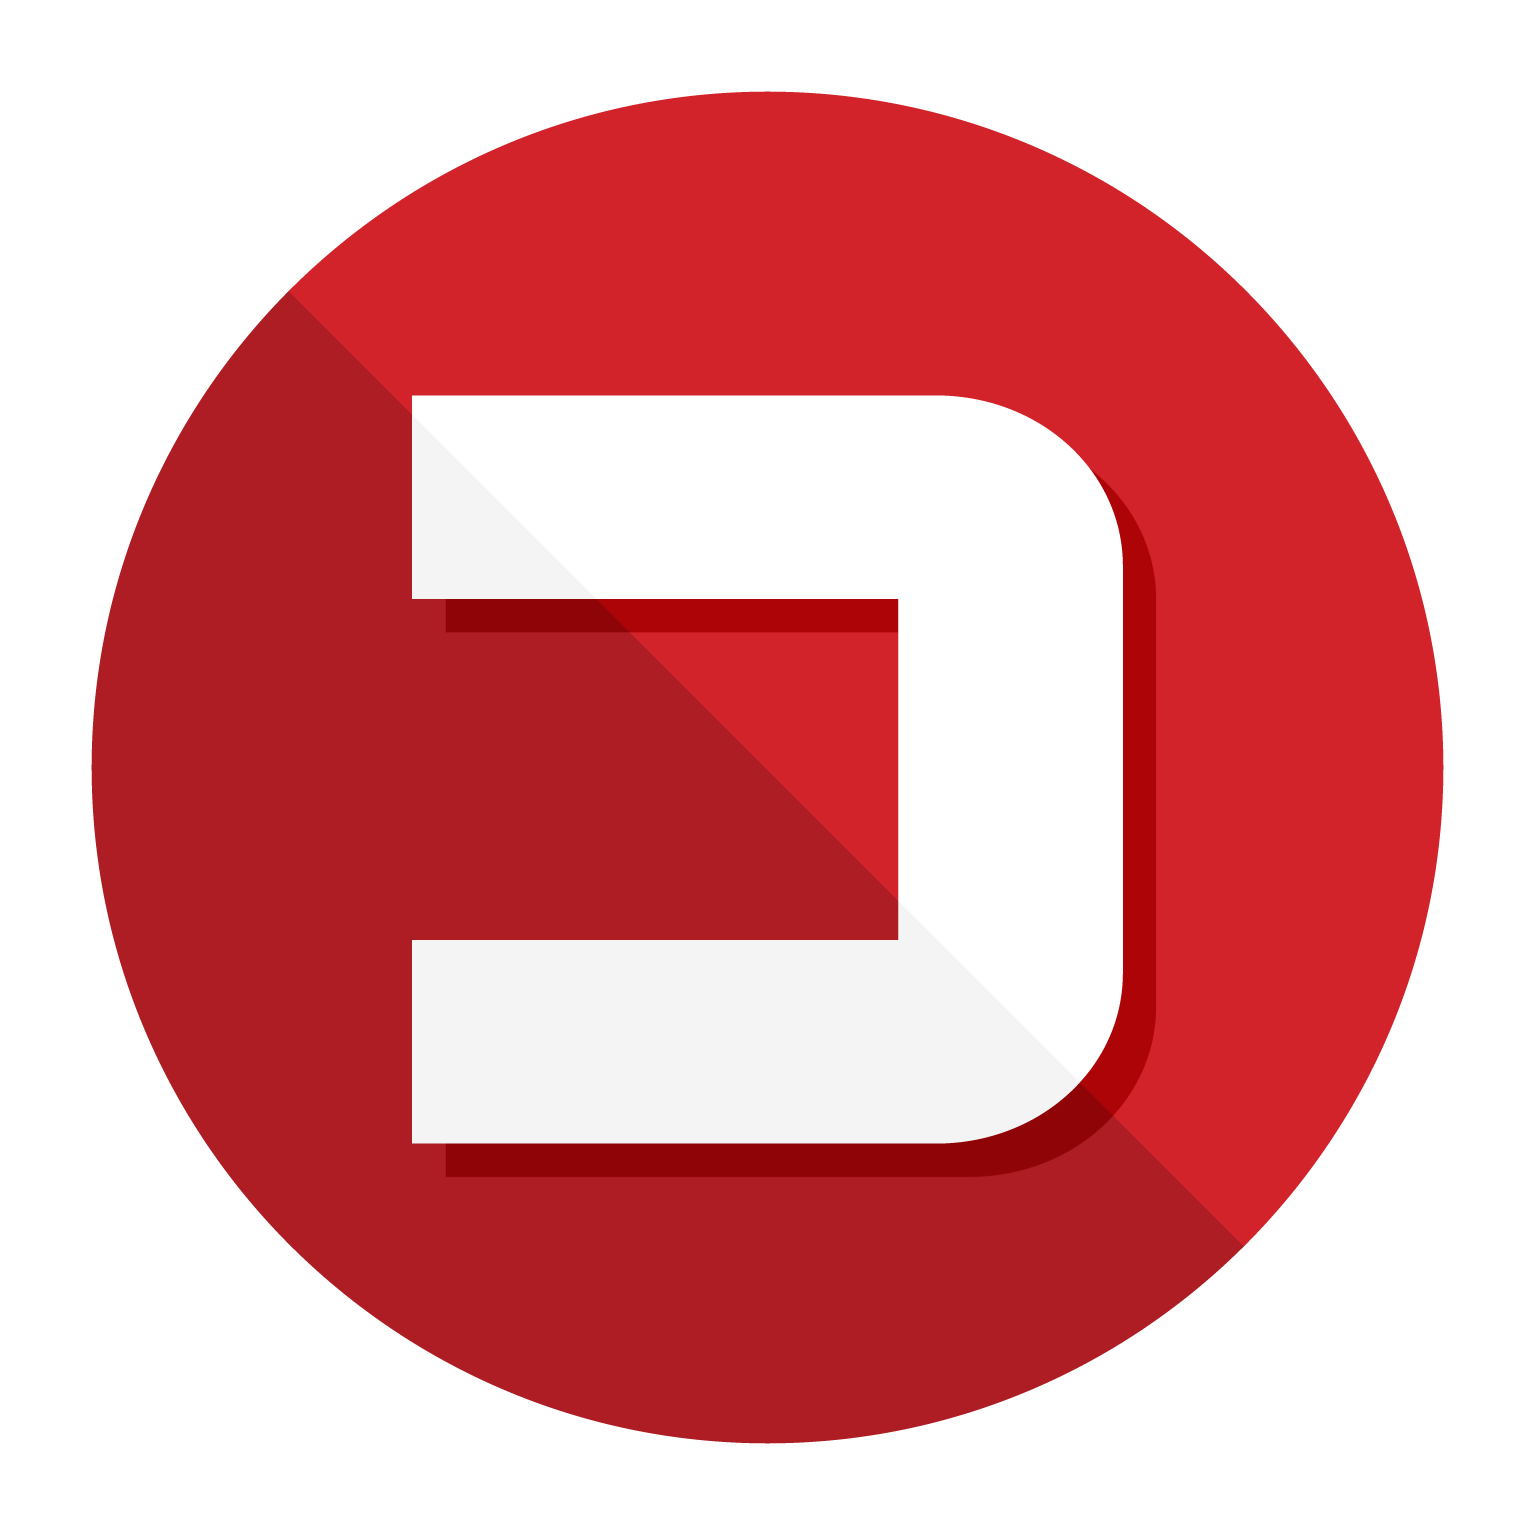 לוגו אתר החדשות ״כלכליסט״